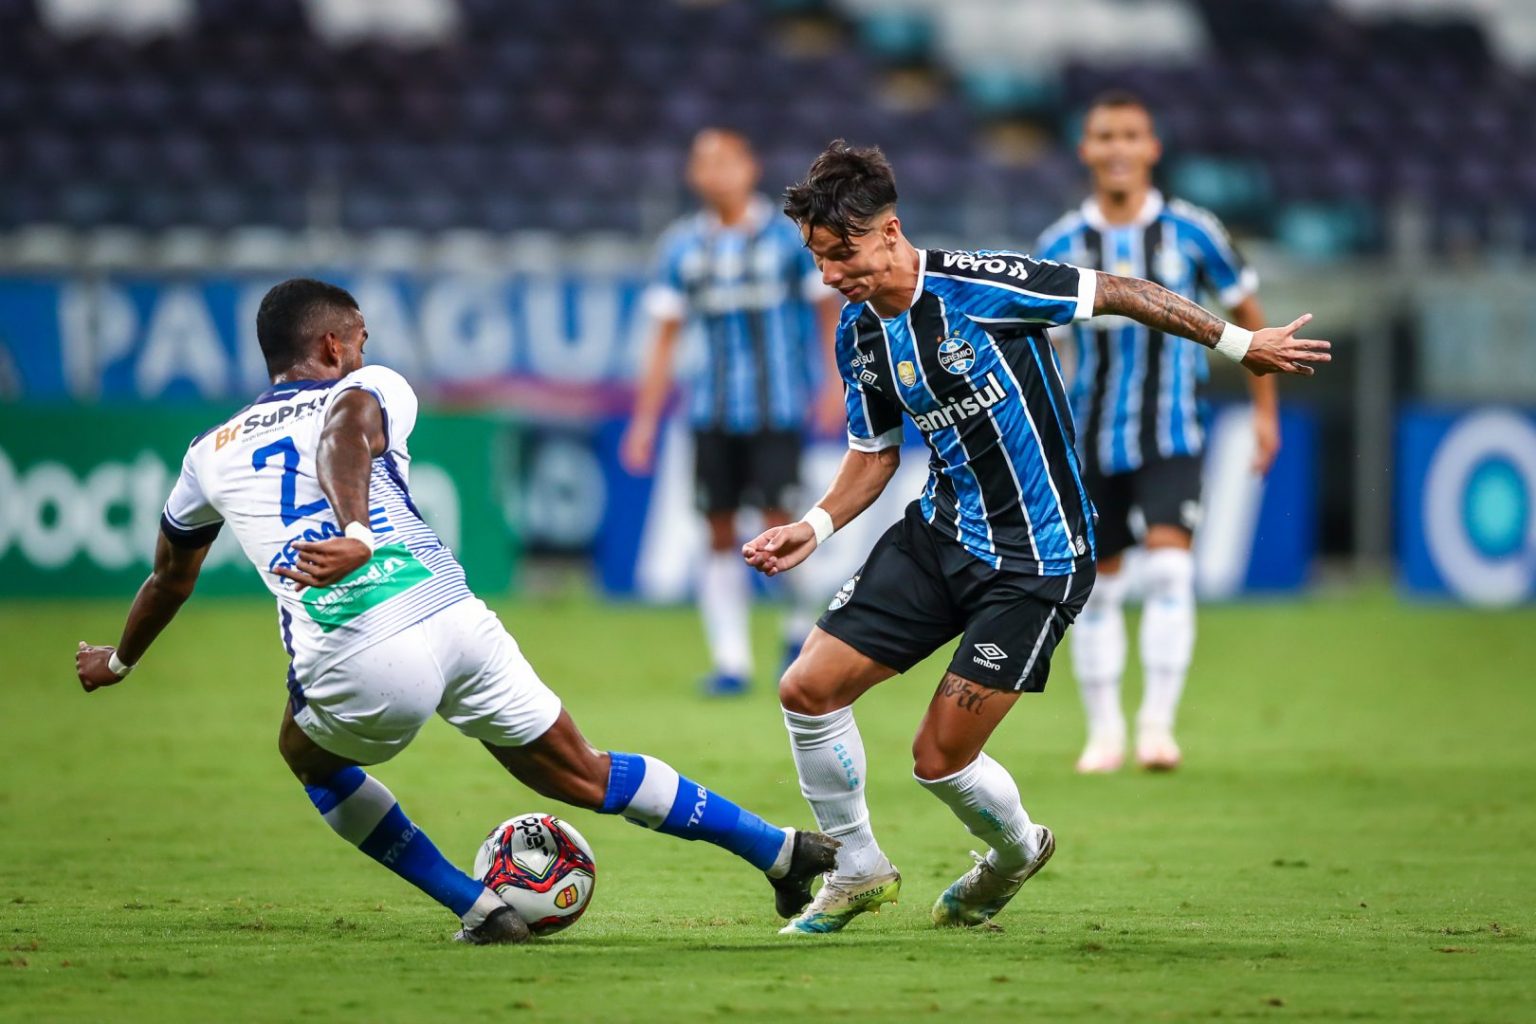 Grêmio vs ABC: A Clash of Titans